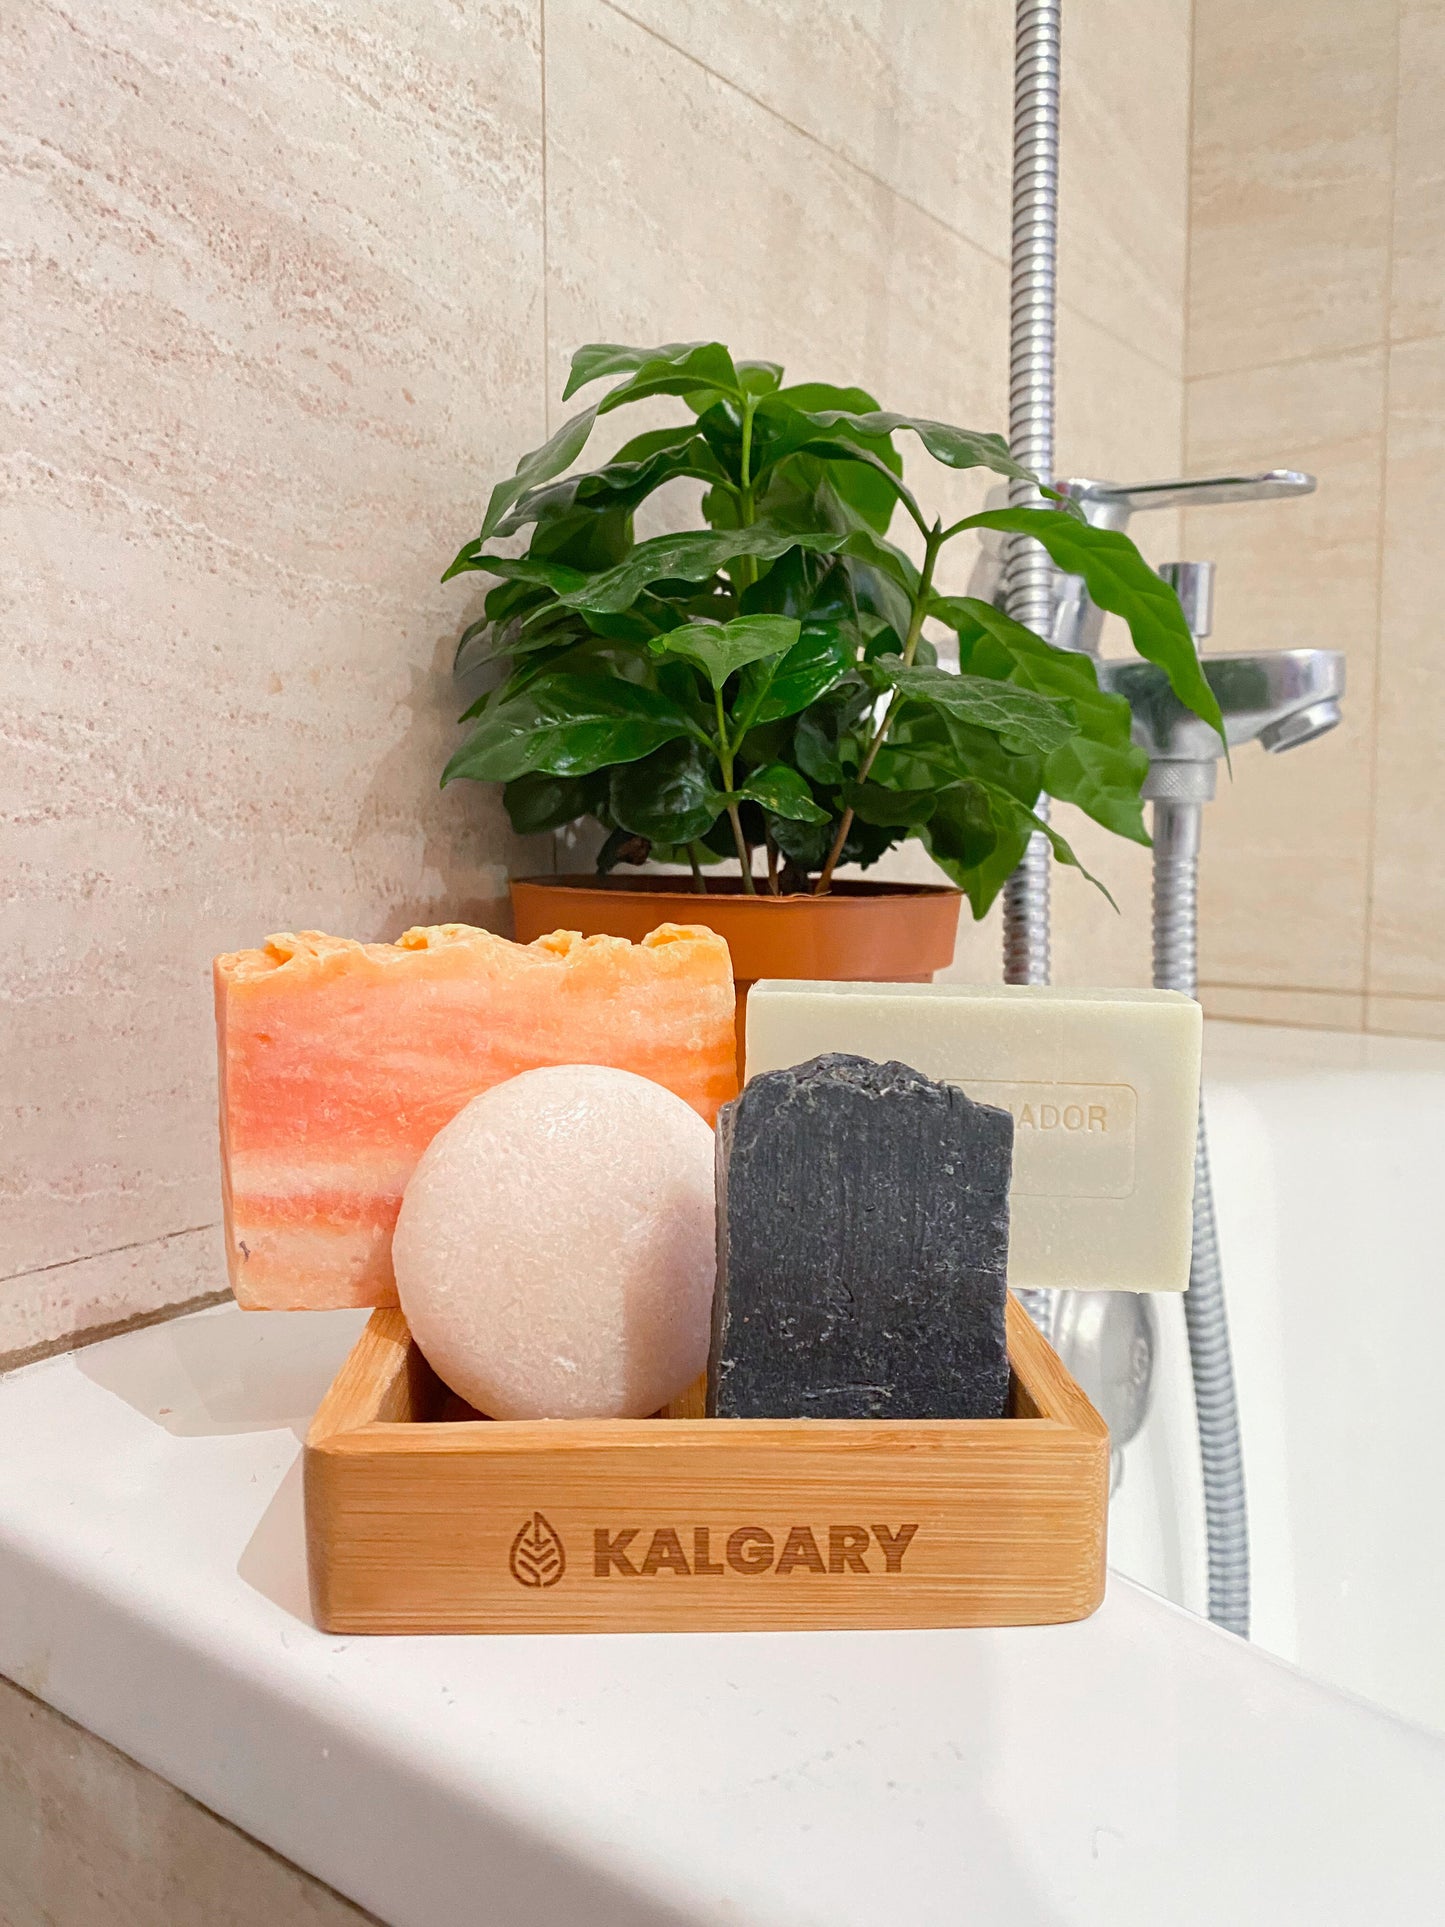 SOAP HOLDER "Kalgary" - Kalgary Soap